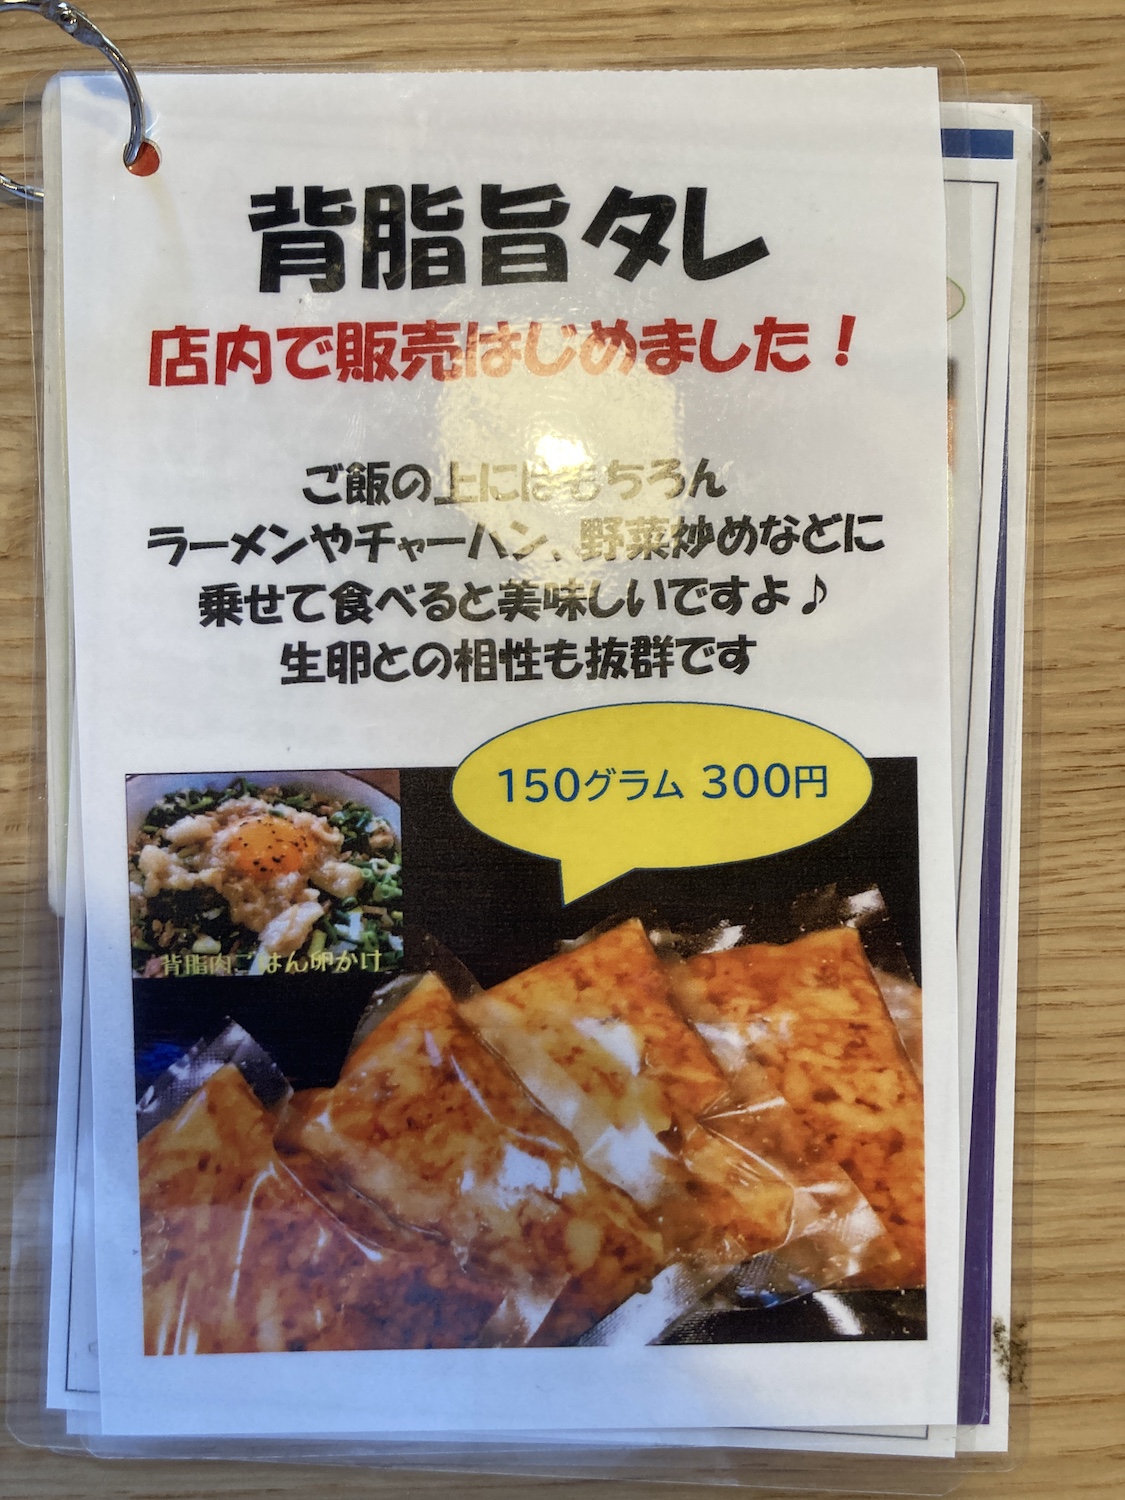 『背脂旨タレ』、150ぐらむで300円。<br>自宅で作る麺類やチャーハンに入れても濃厚メシになりそう。